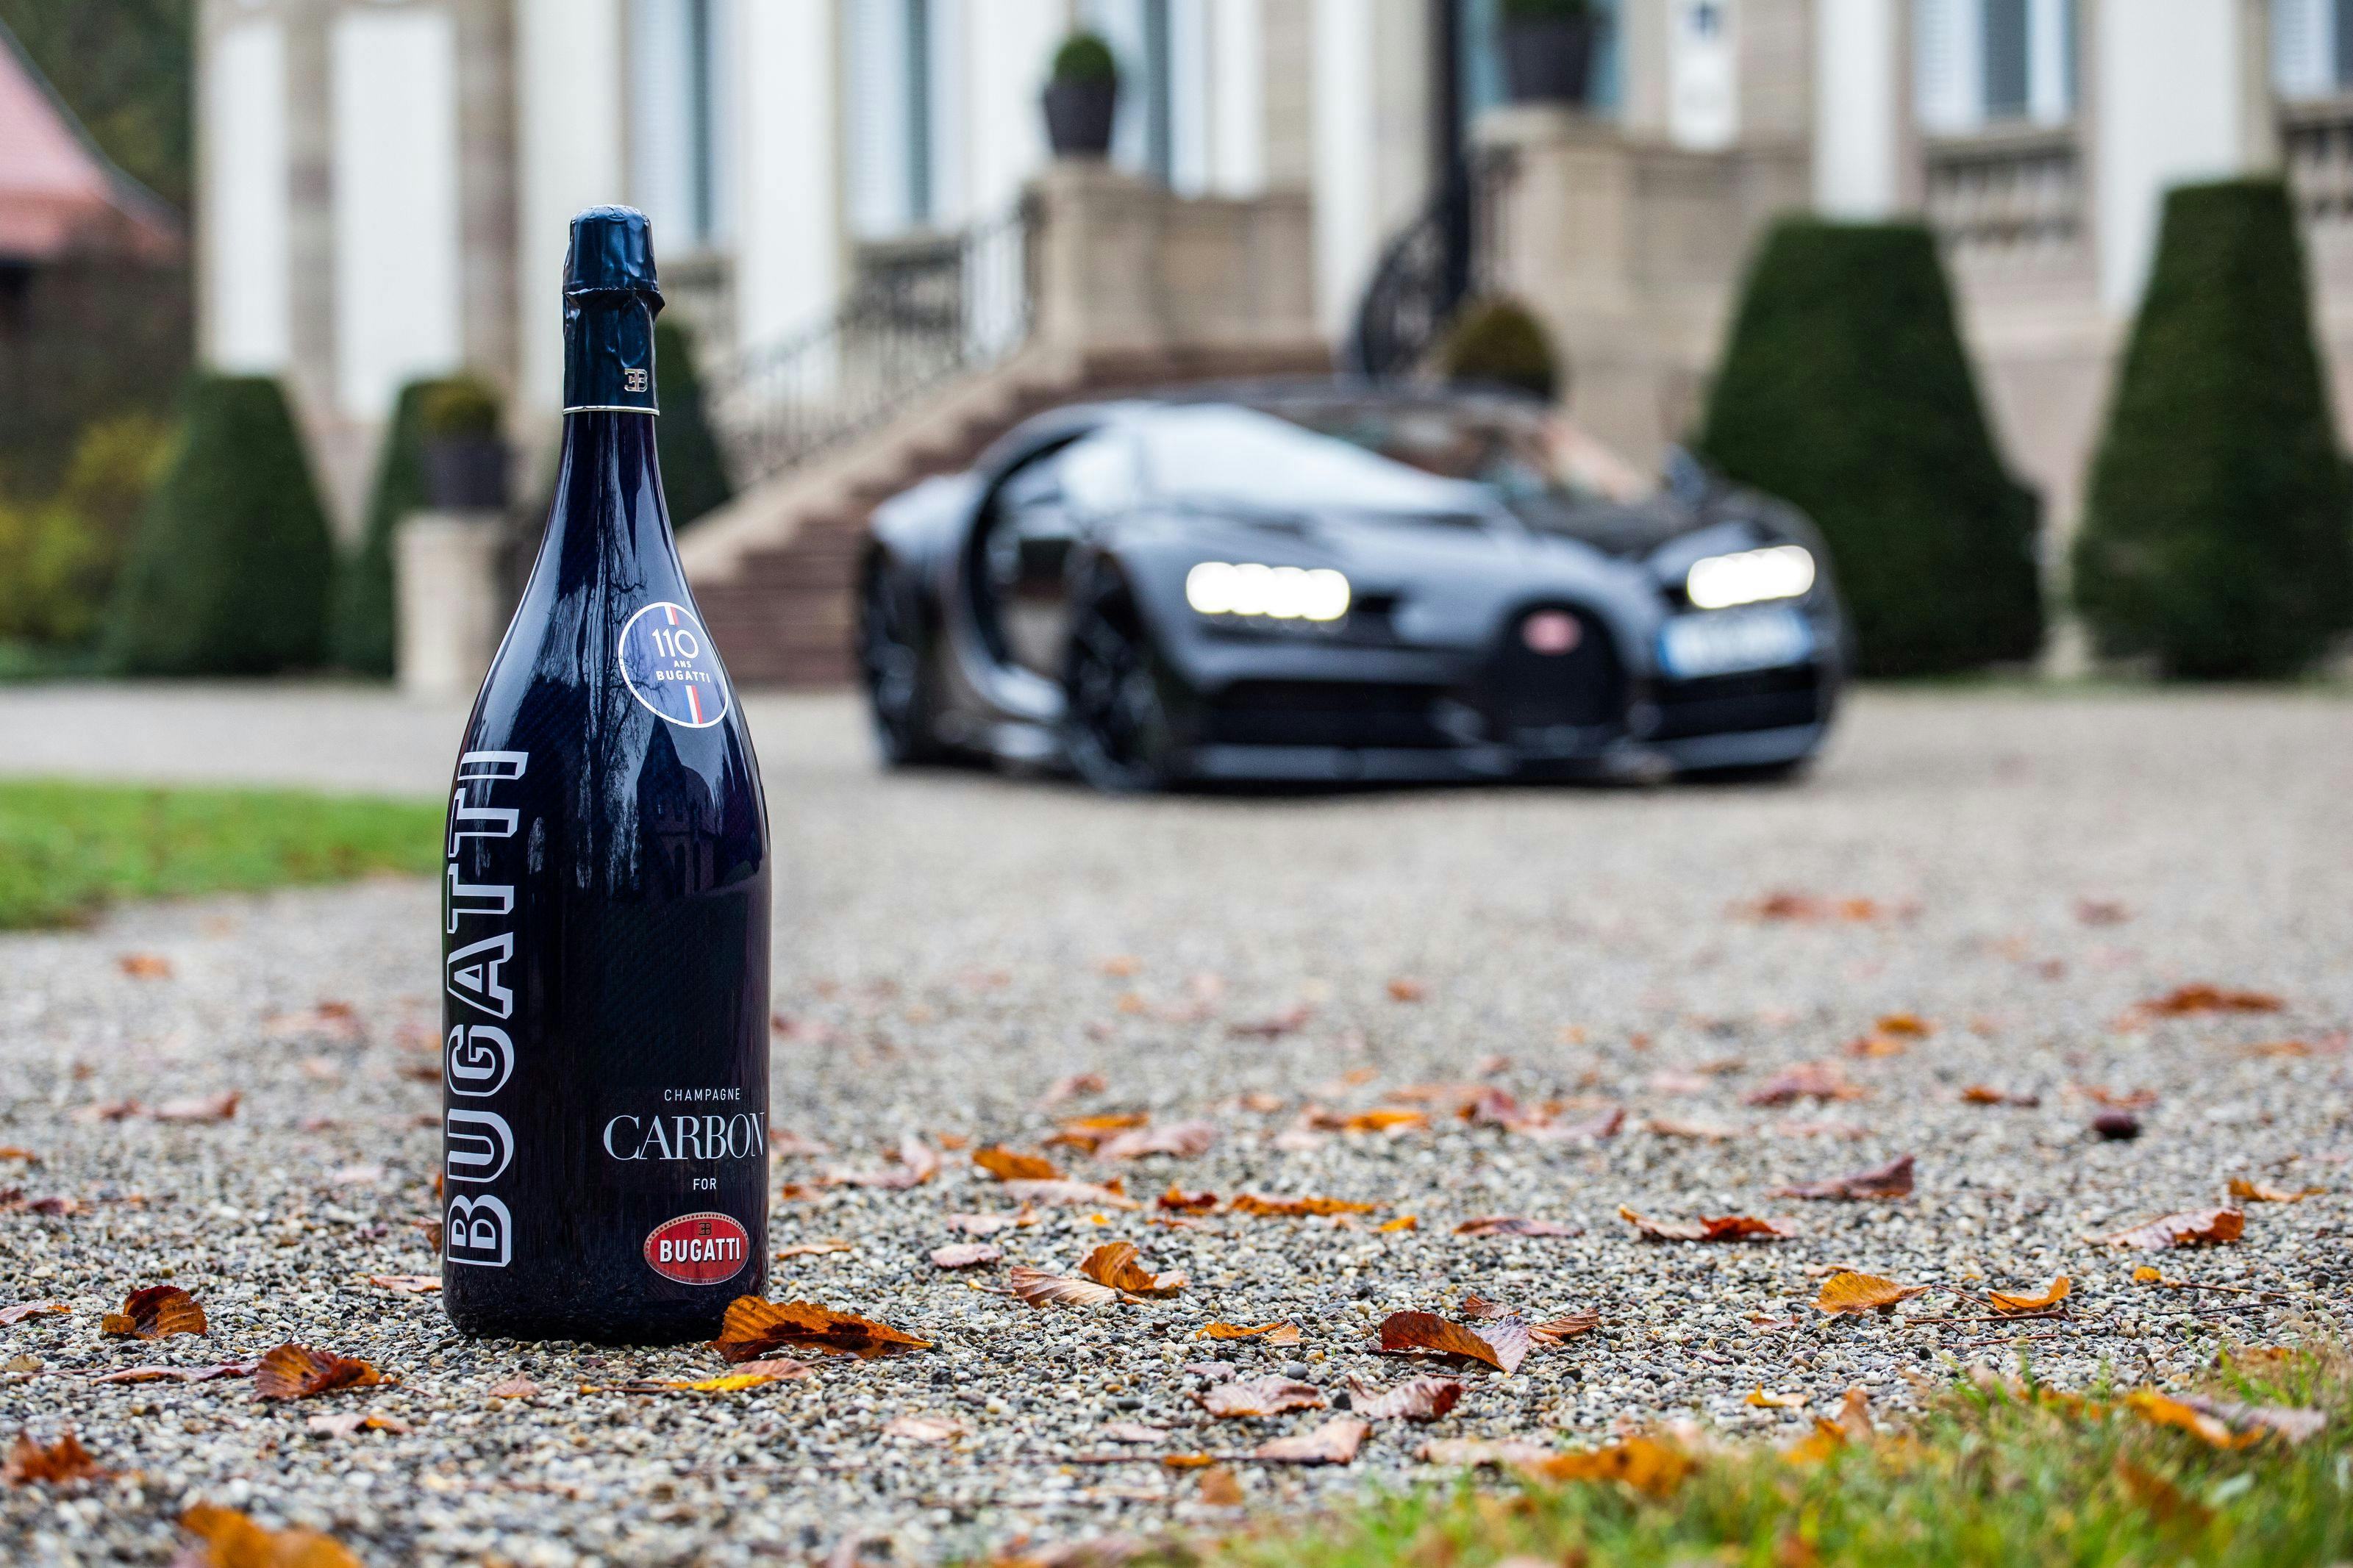 Bugatti et Champagne Carbon célèbrent leur partenariat